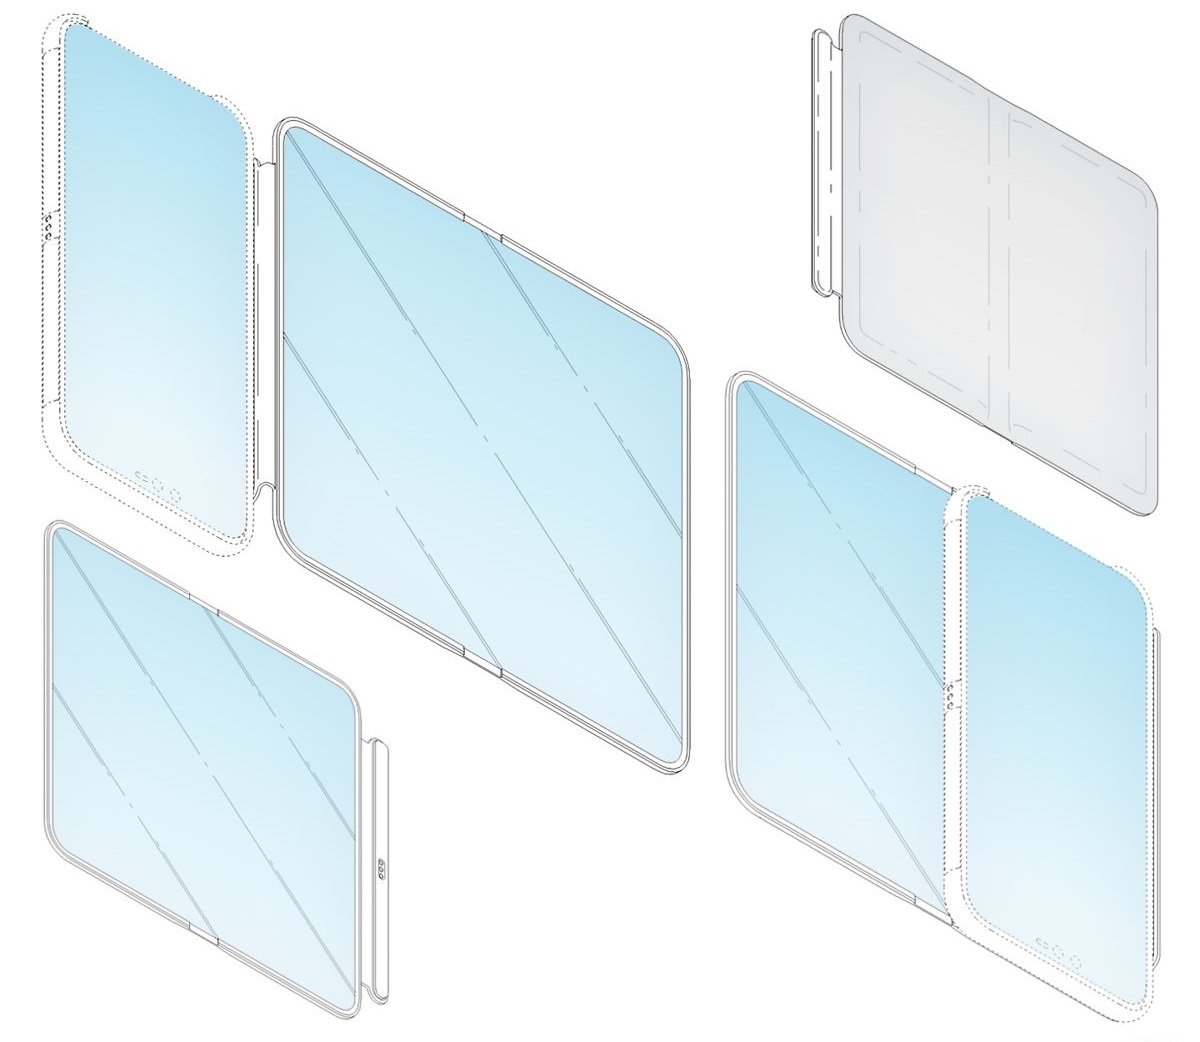 LG تسجل براءة إختراع جديدة لغطاء واقي للهواتف الذكية يضم شاشة مرنة